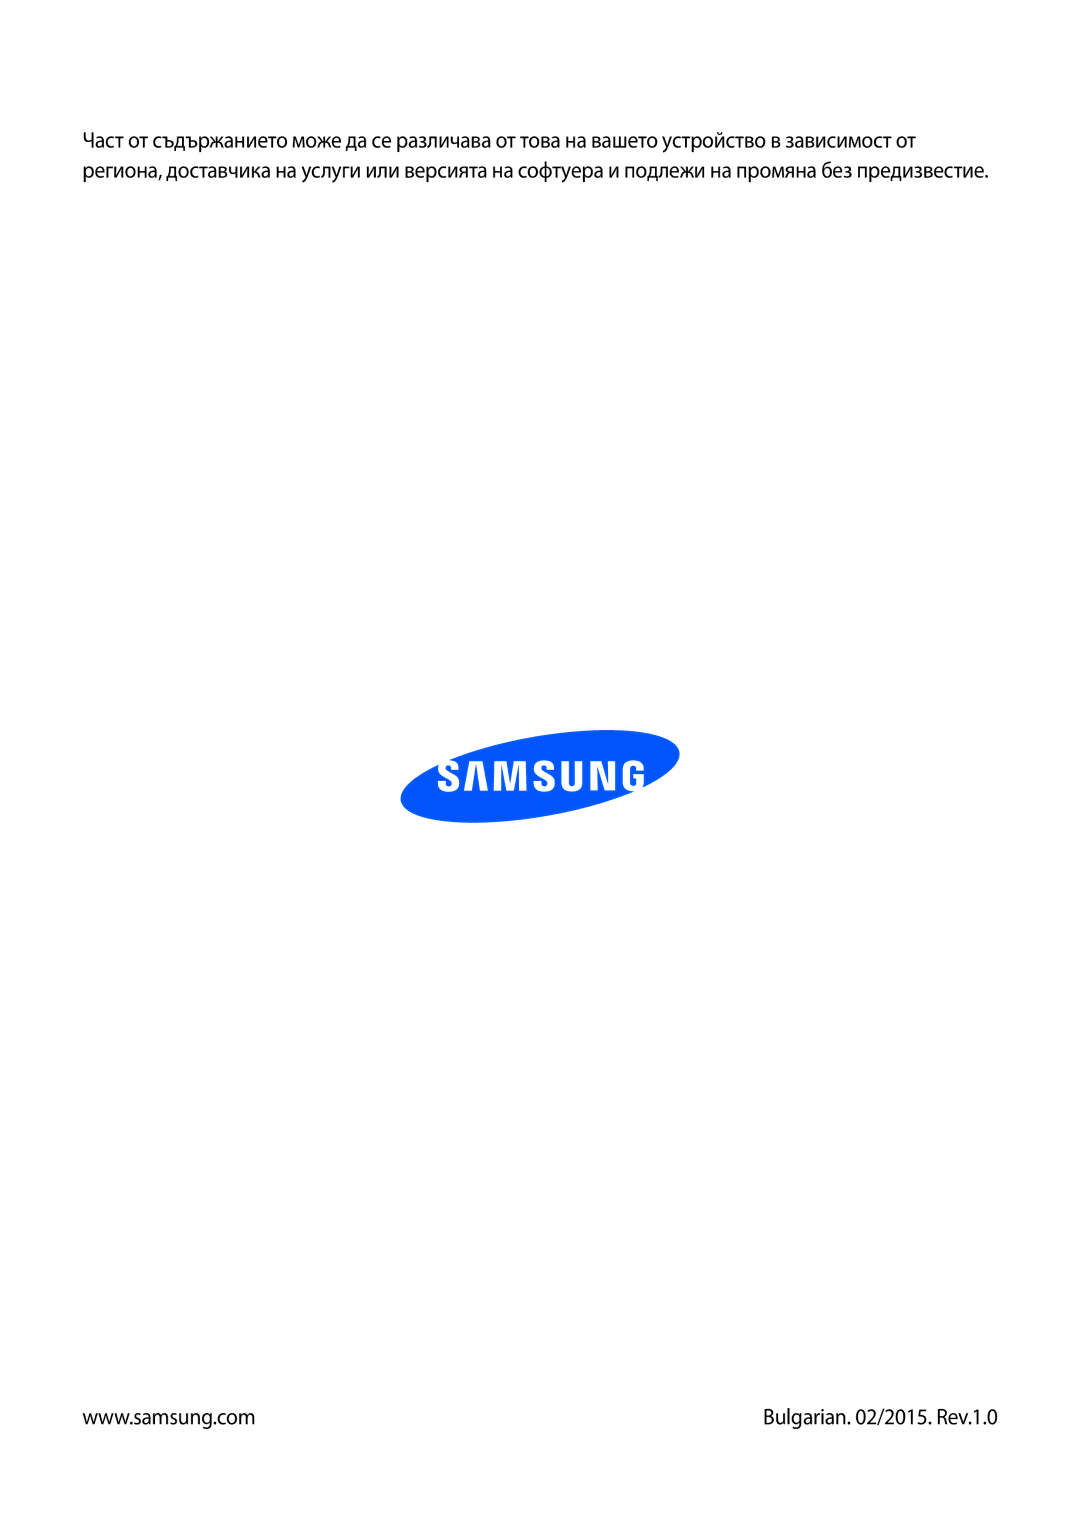 Samsung SM-N9005ZREGBL, SM-N9005ZKEBGL, SM-N9005ZKEMTL, SM-N9005ZIEGBL, SM-N9005ZWEMTL manual Bulgarian /2015. Rev.1.0 